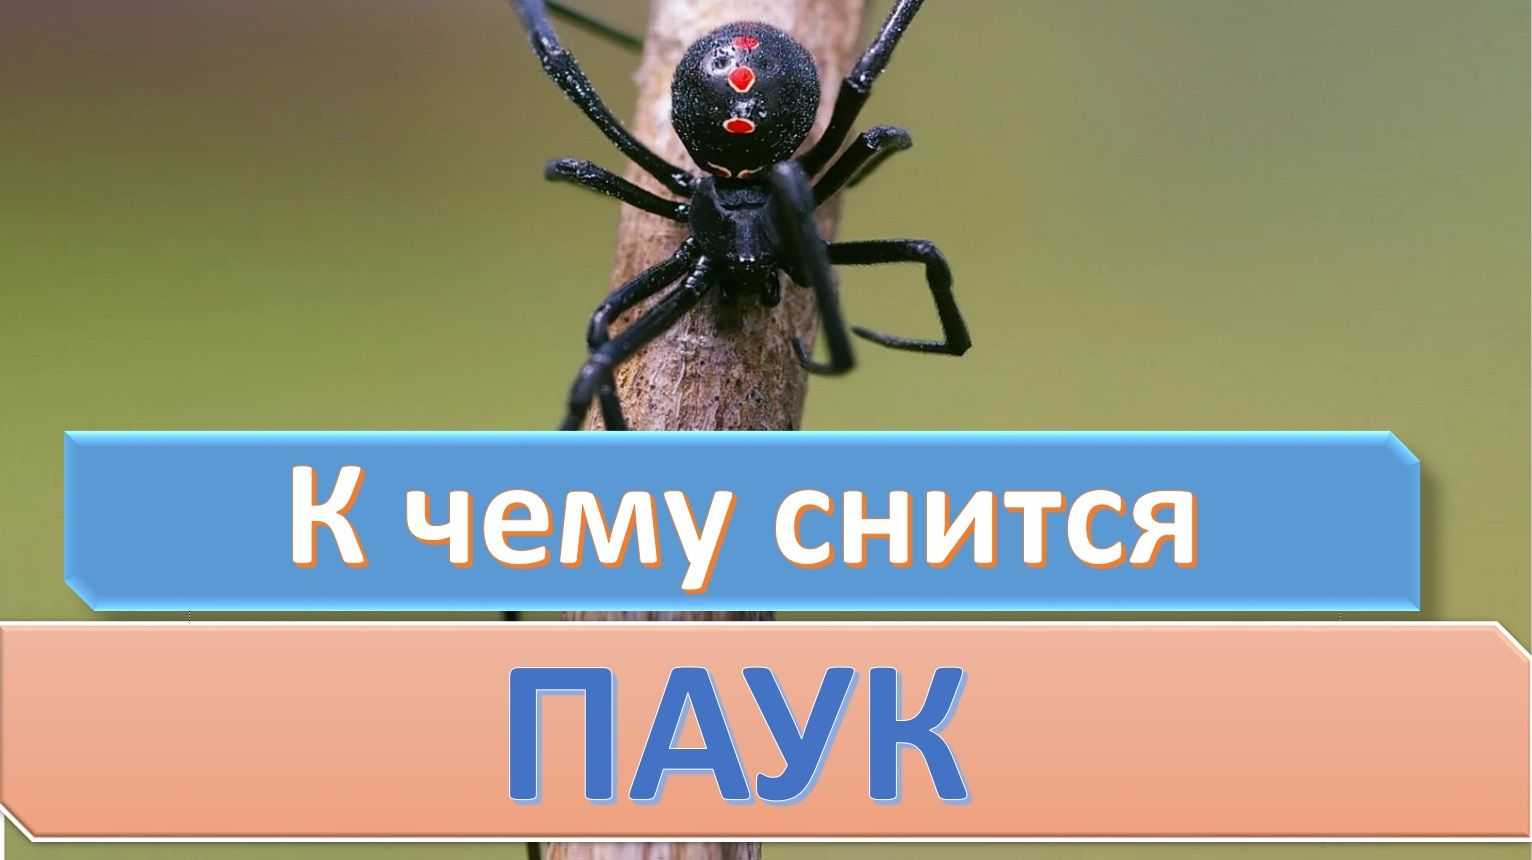 К чему снятся пауки: что значит, если черная вдова, тарантул укусил мужчину либо женщину за ногу, руку или палец во сне